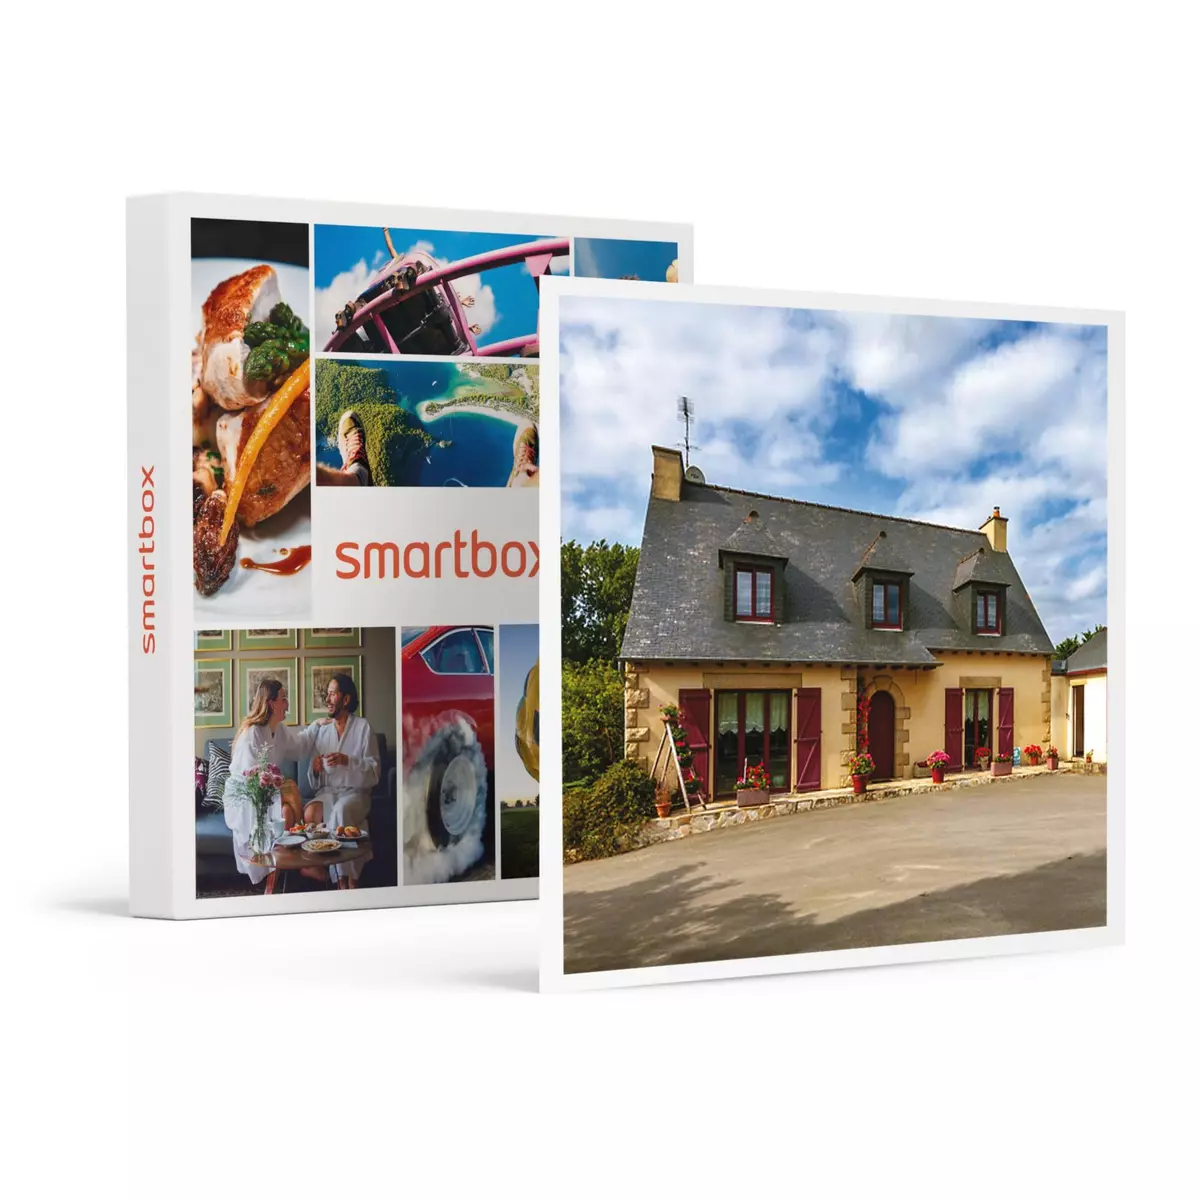 Smartbox Séjour familiale en chambre d'hôtes : 3 jours avec dîner près de Saint-Malo - Coffret Cadeau Séjour